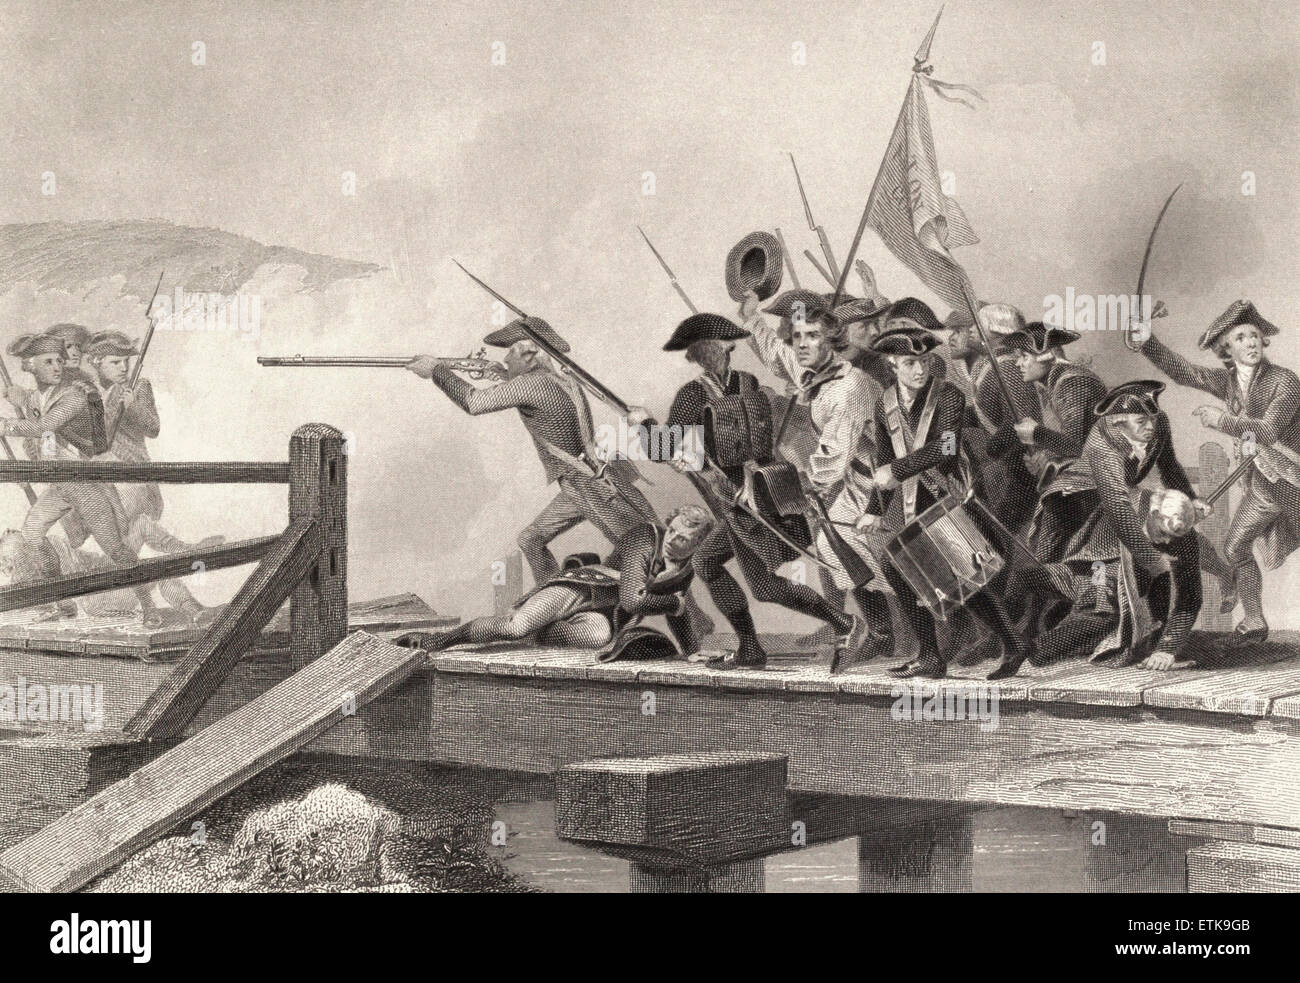 Lutte sur Concord Bridge, bataille de Concord, Révolution américaine Banque D'Images